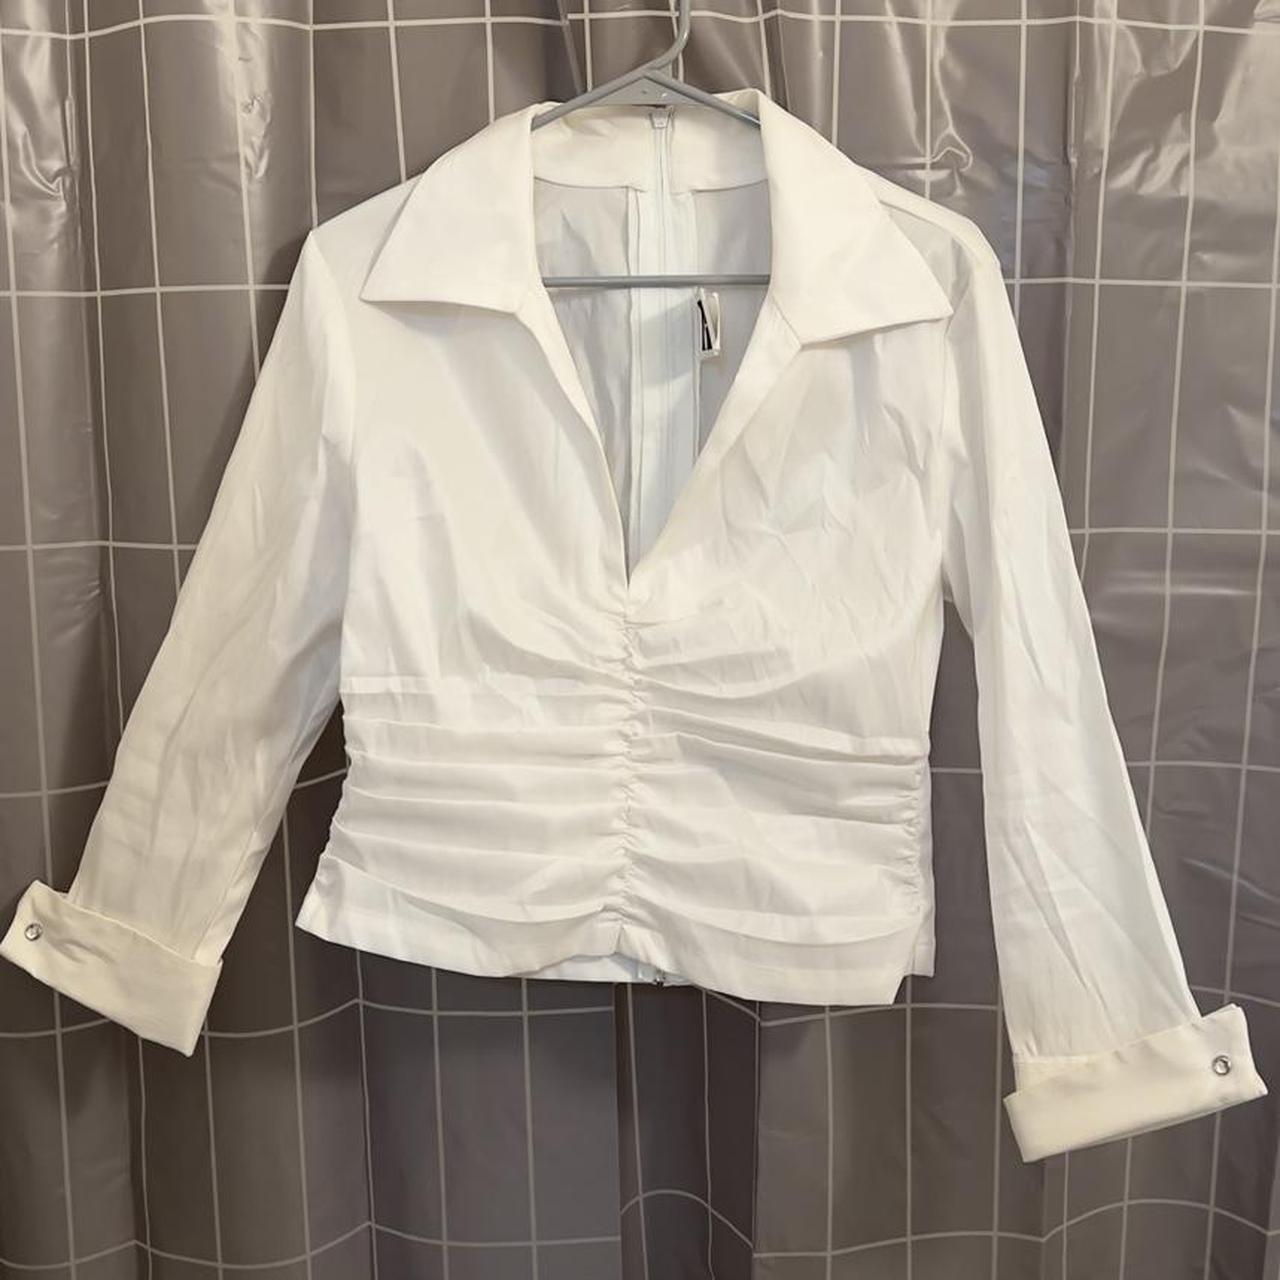 Tadashi Shoji Women's White Shirt